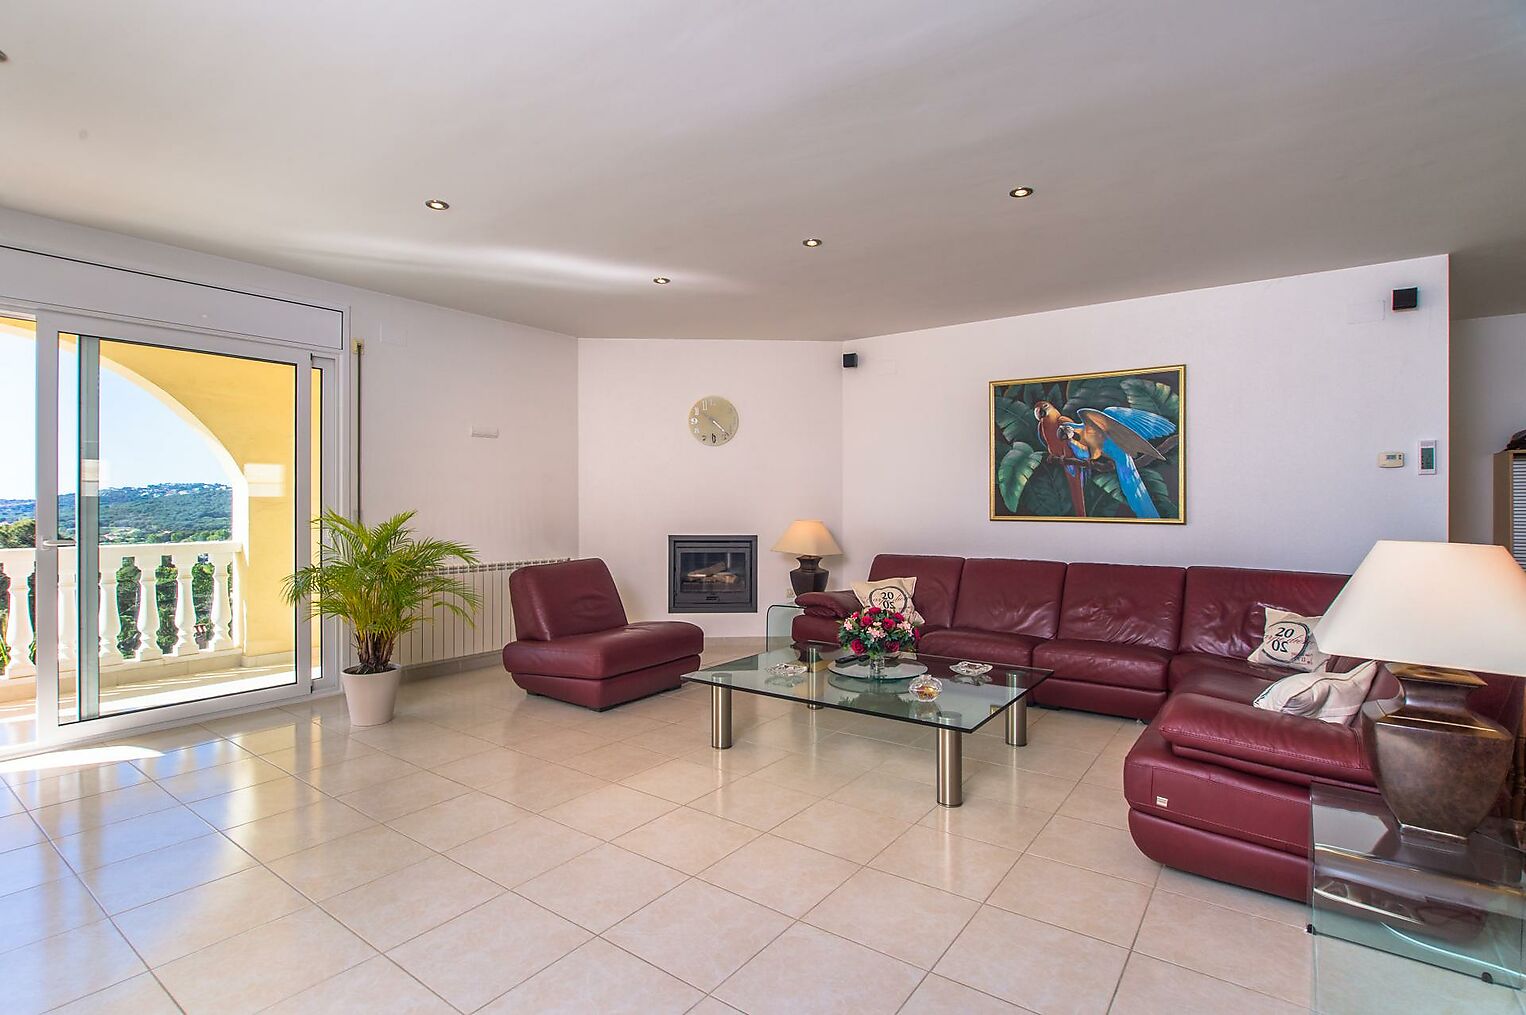 Casa de quatre habitacions a Platja d'Aro amb vistes espectaculars